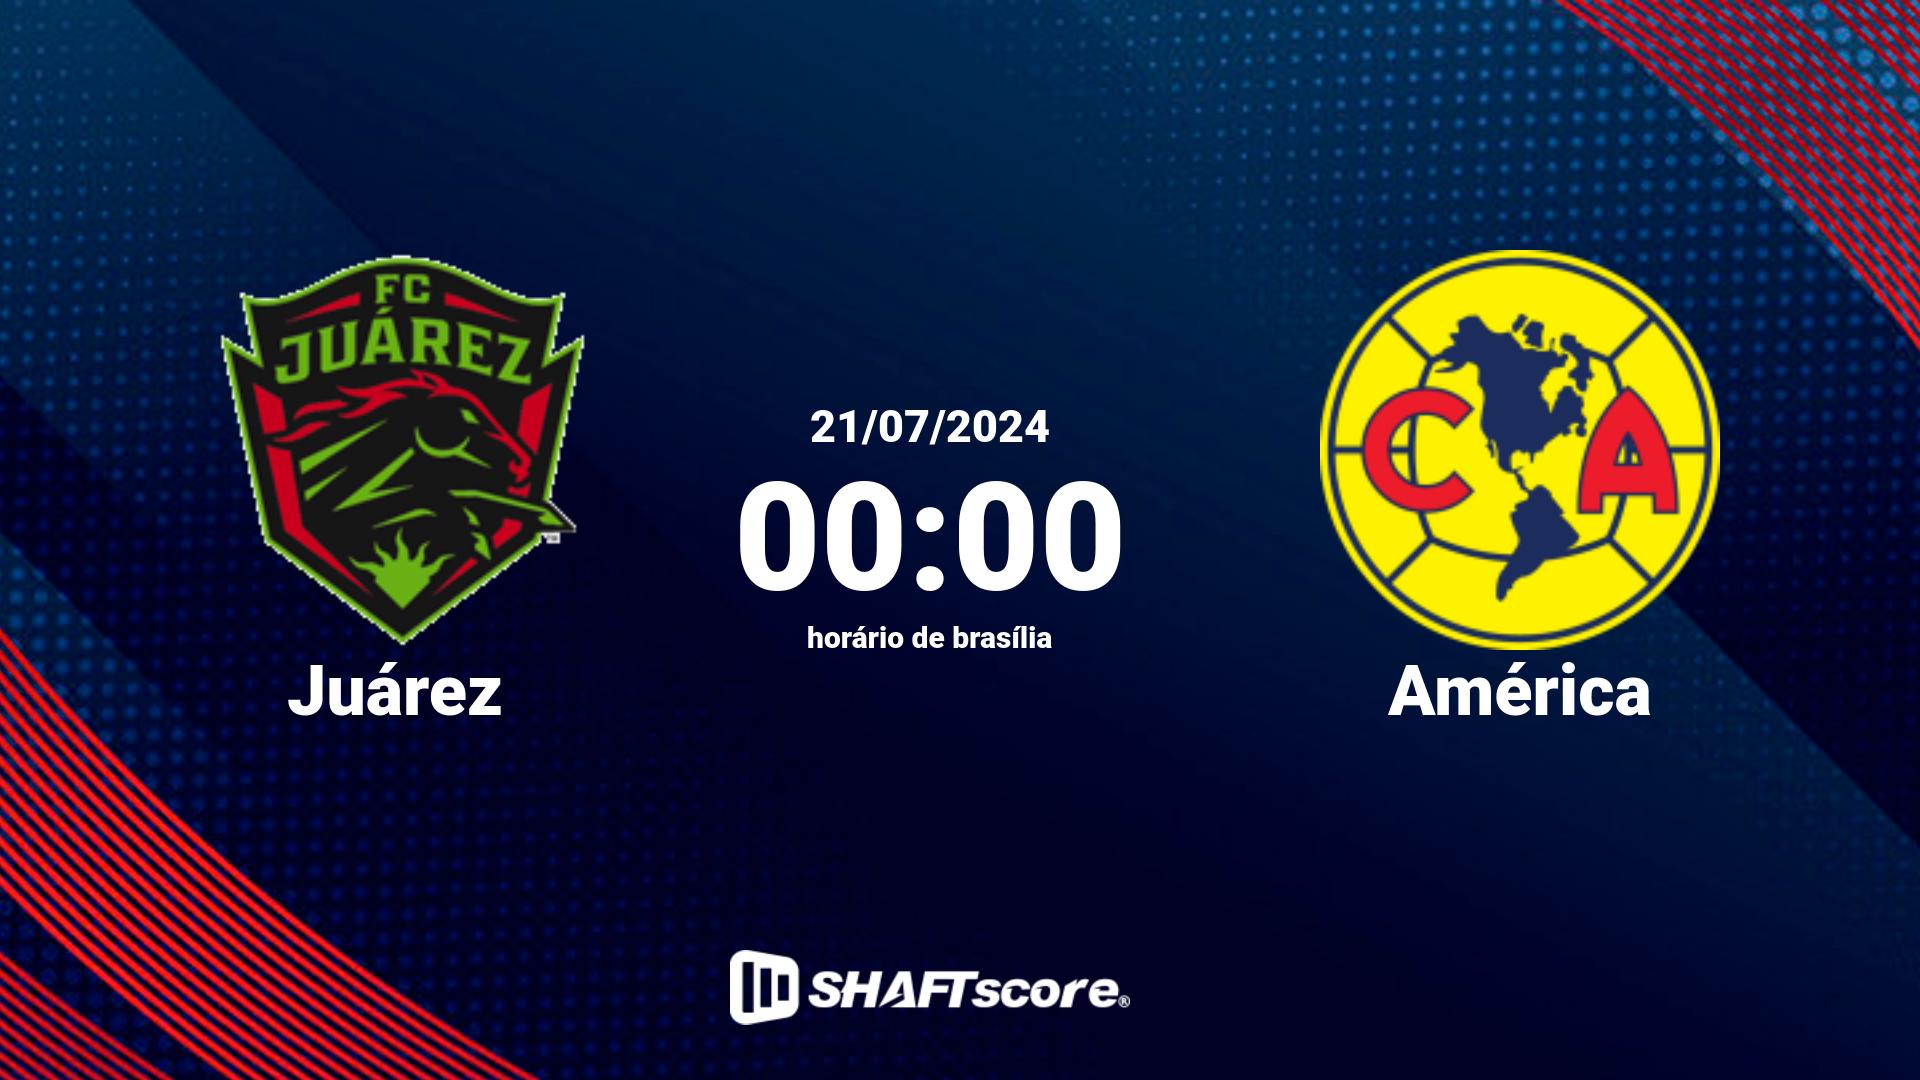 Estatísticas do jogo Juárez vs América 21.07 00:00